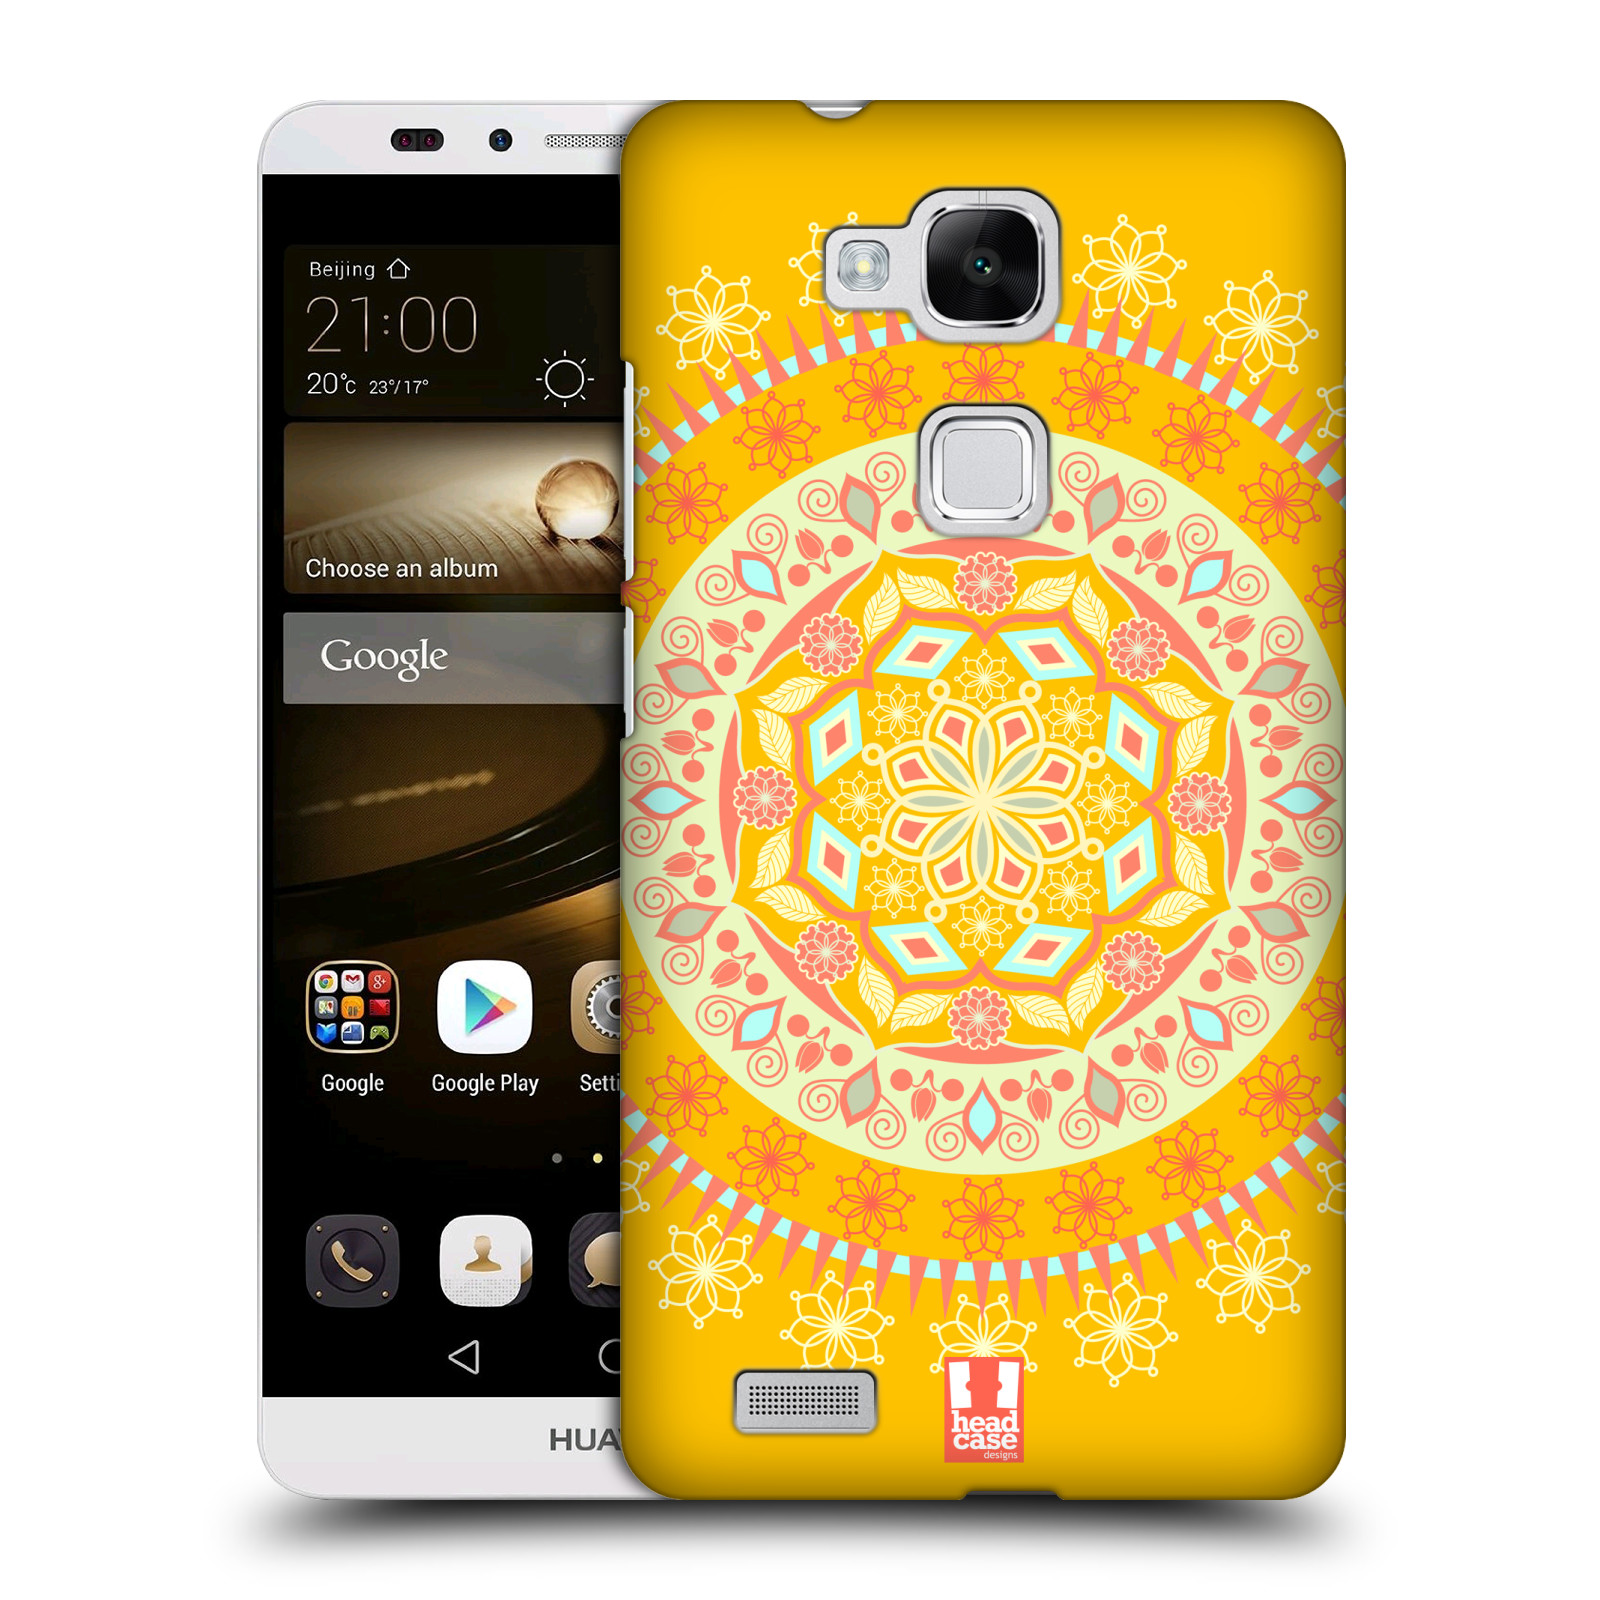 HEAD CASE plastový obal na mobil Huawei Mate 7 vzor Indie Mandala slunce barevný motiv ŽLUTÁ